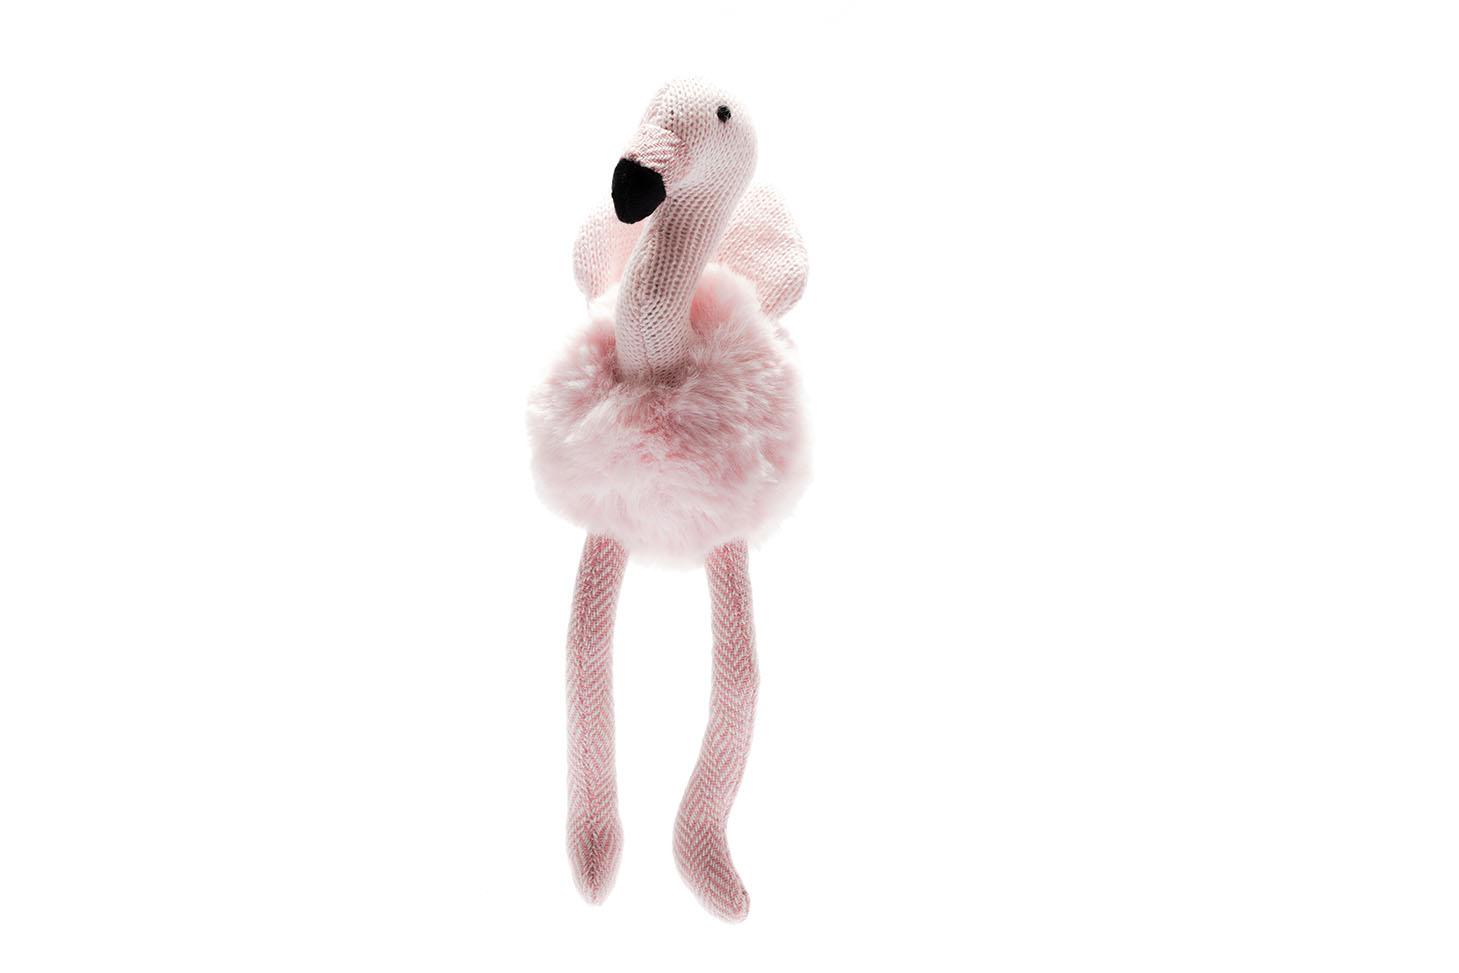 flamingo baby toy